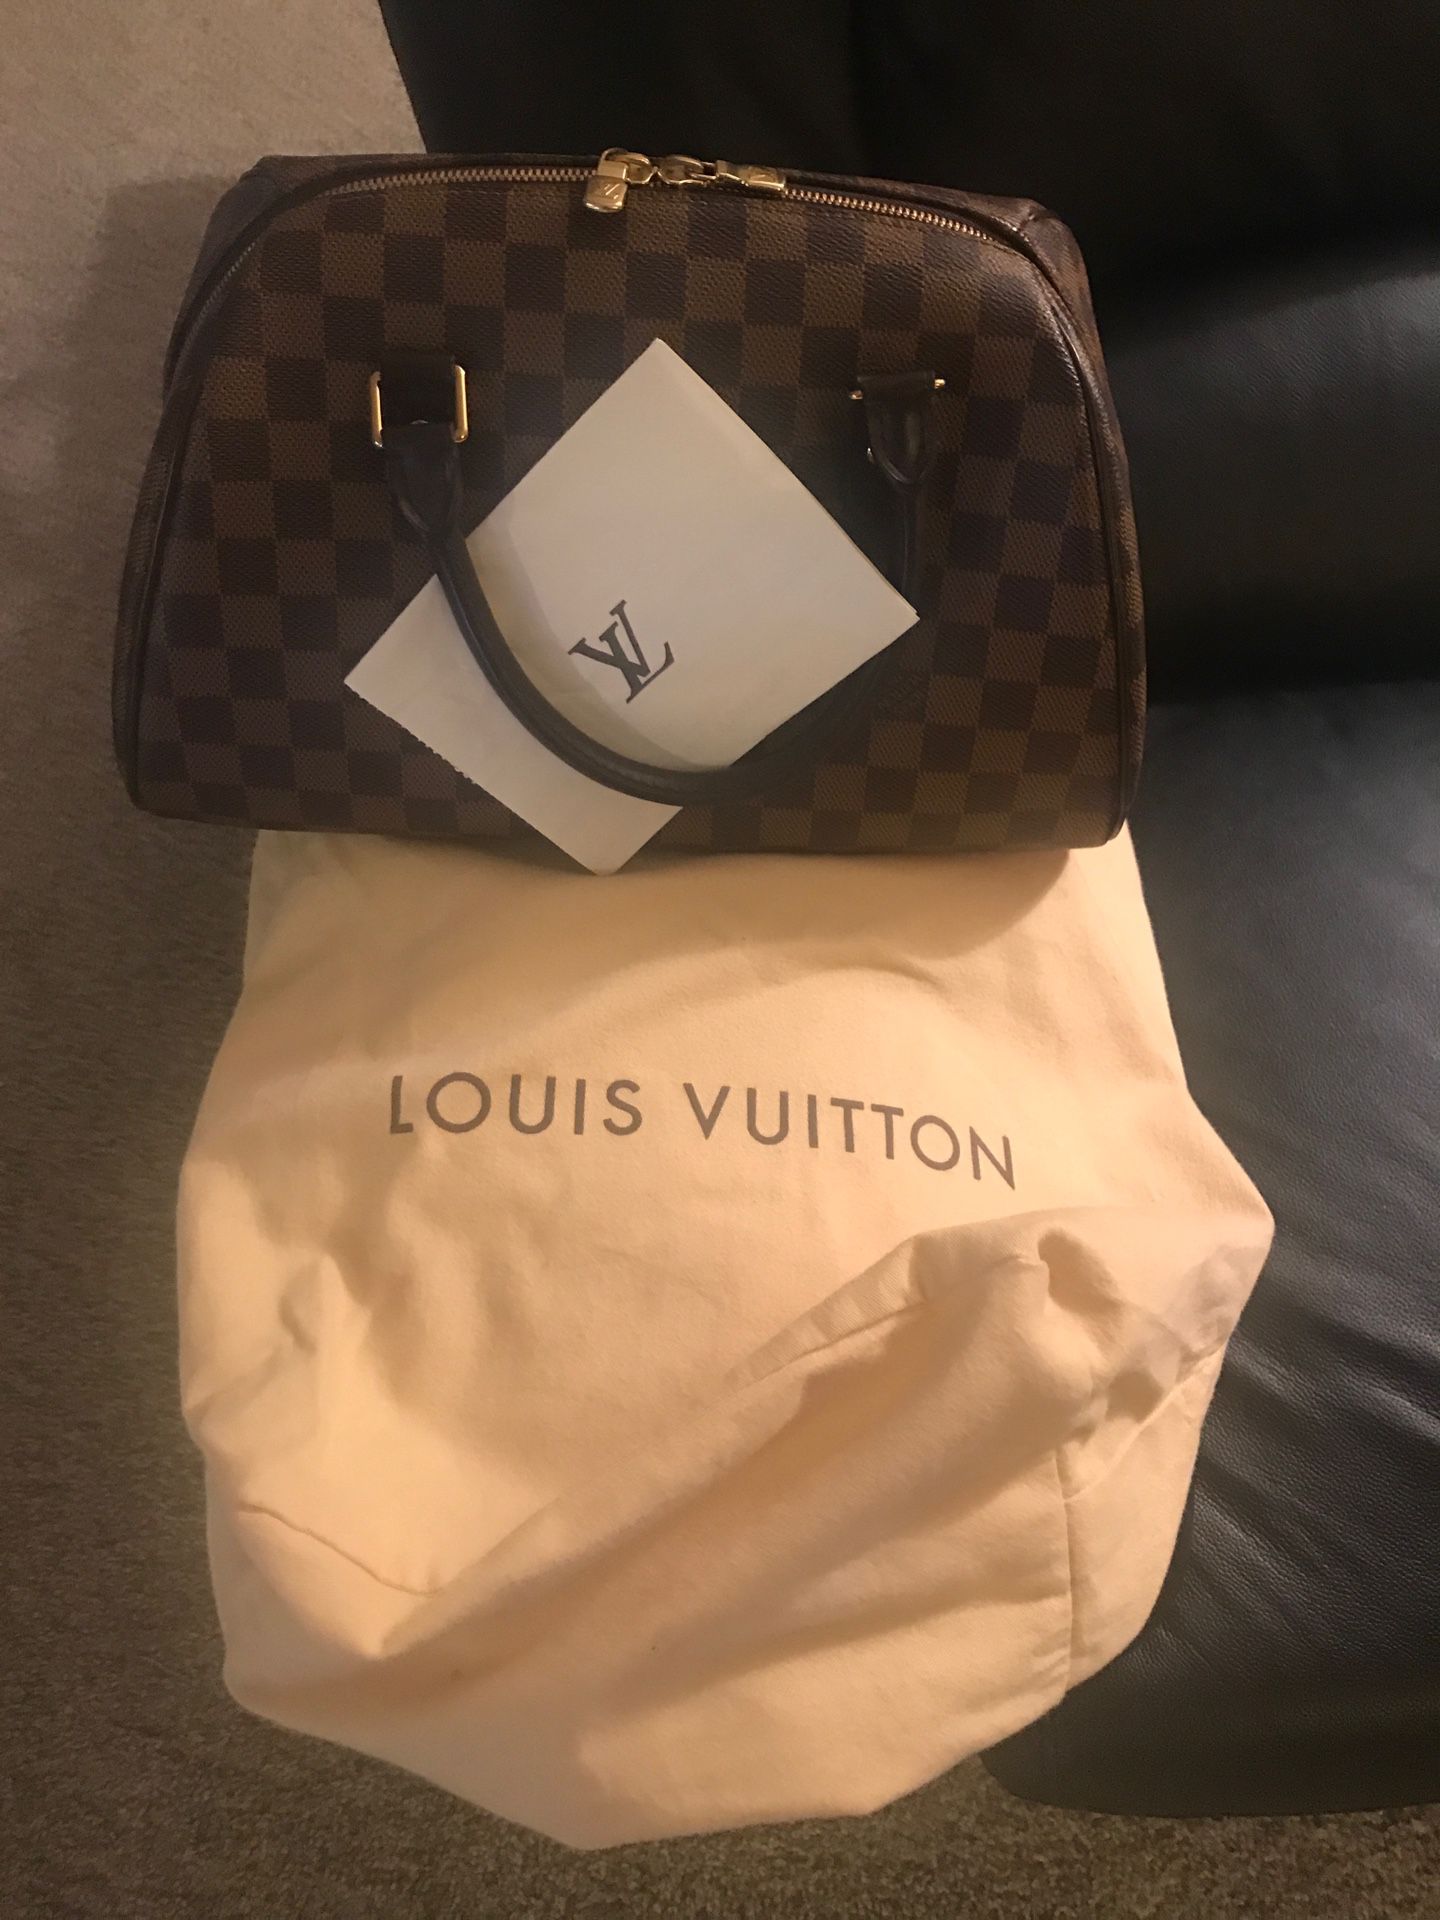 Vintage. Louis Vuitton bag purchase 2009